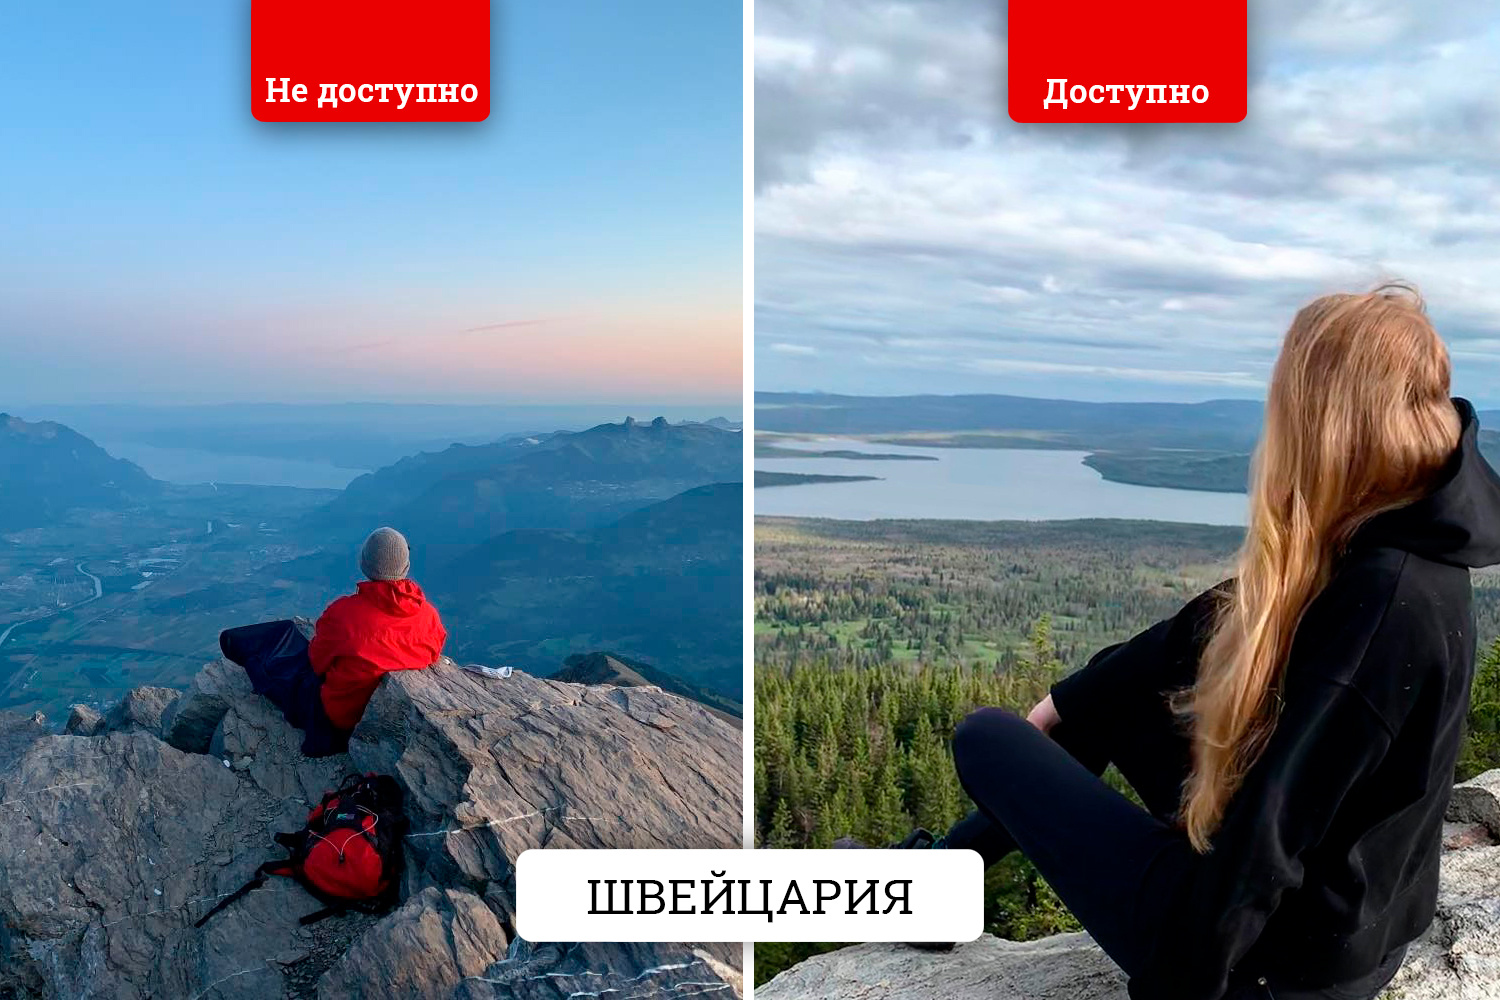 Сделать фото с мечтательным взглядом вдаль можно и на Южном Урале — почти бесплатно